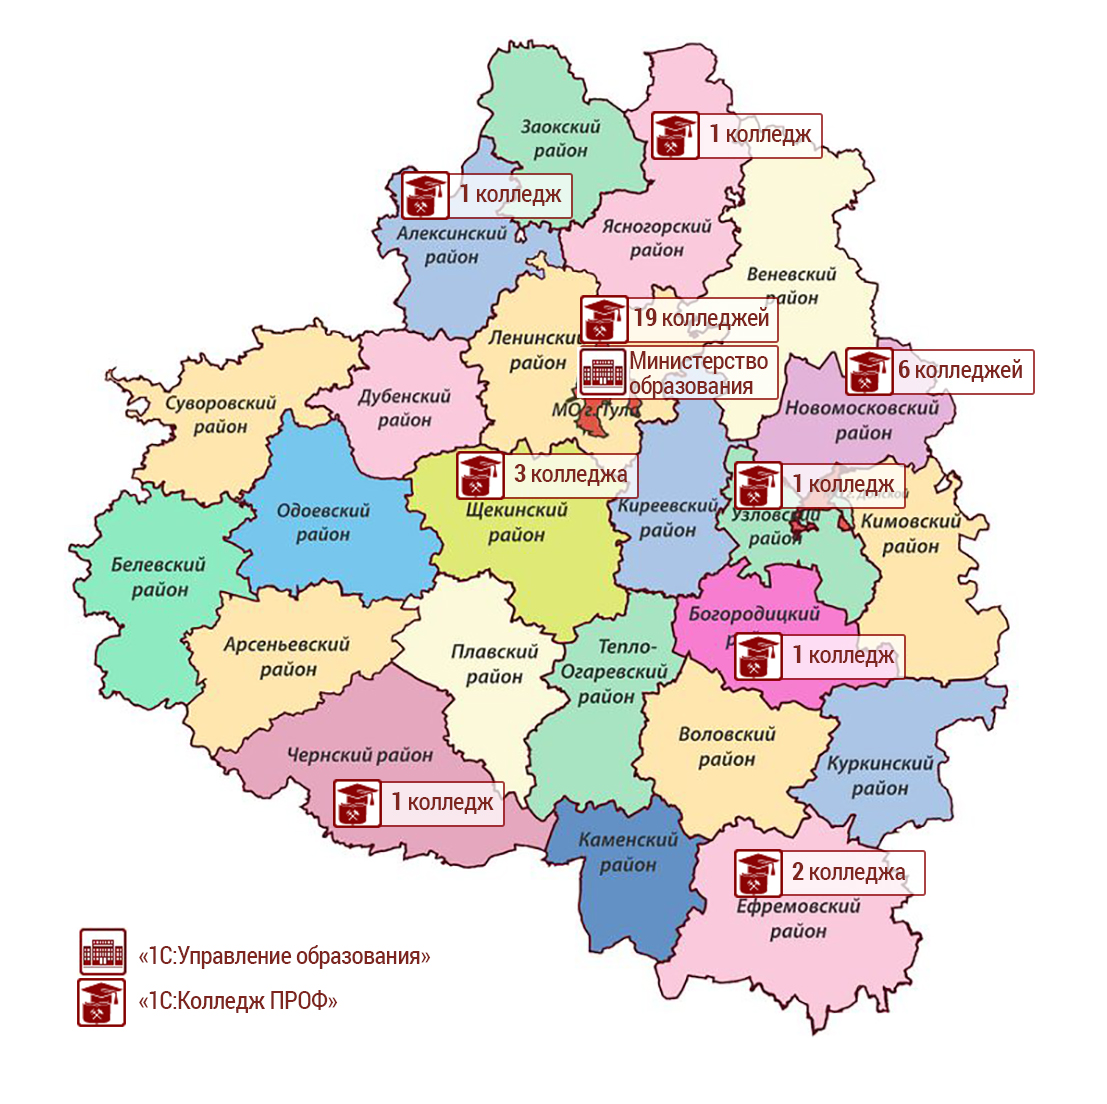 Территориальное распределение автоматизированных колледжей Тульской области